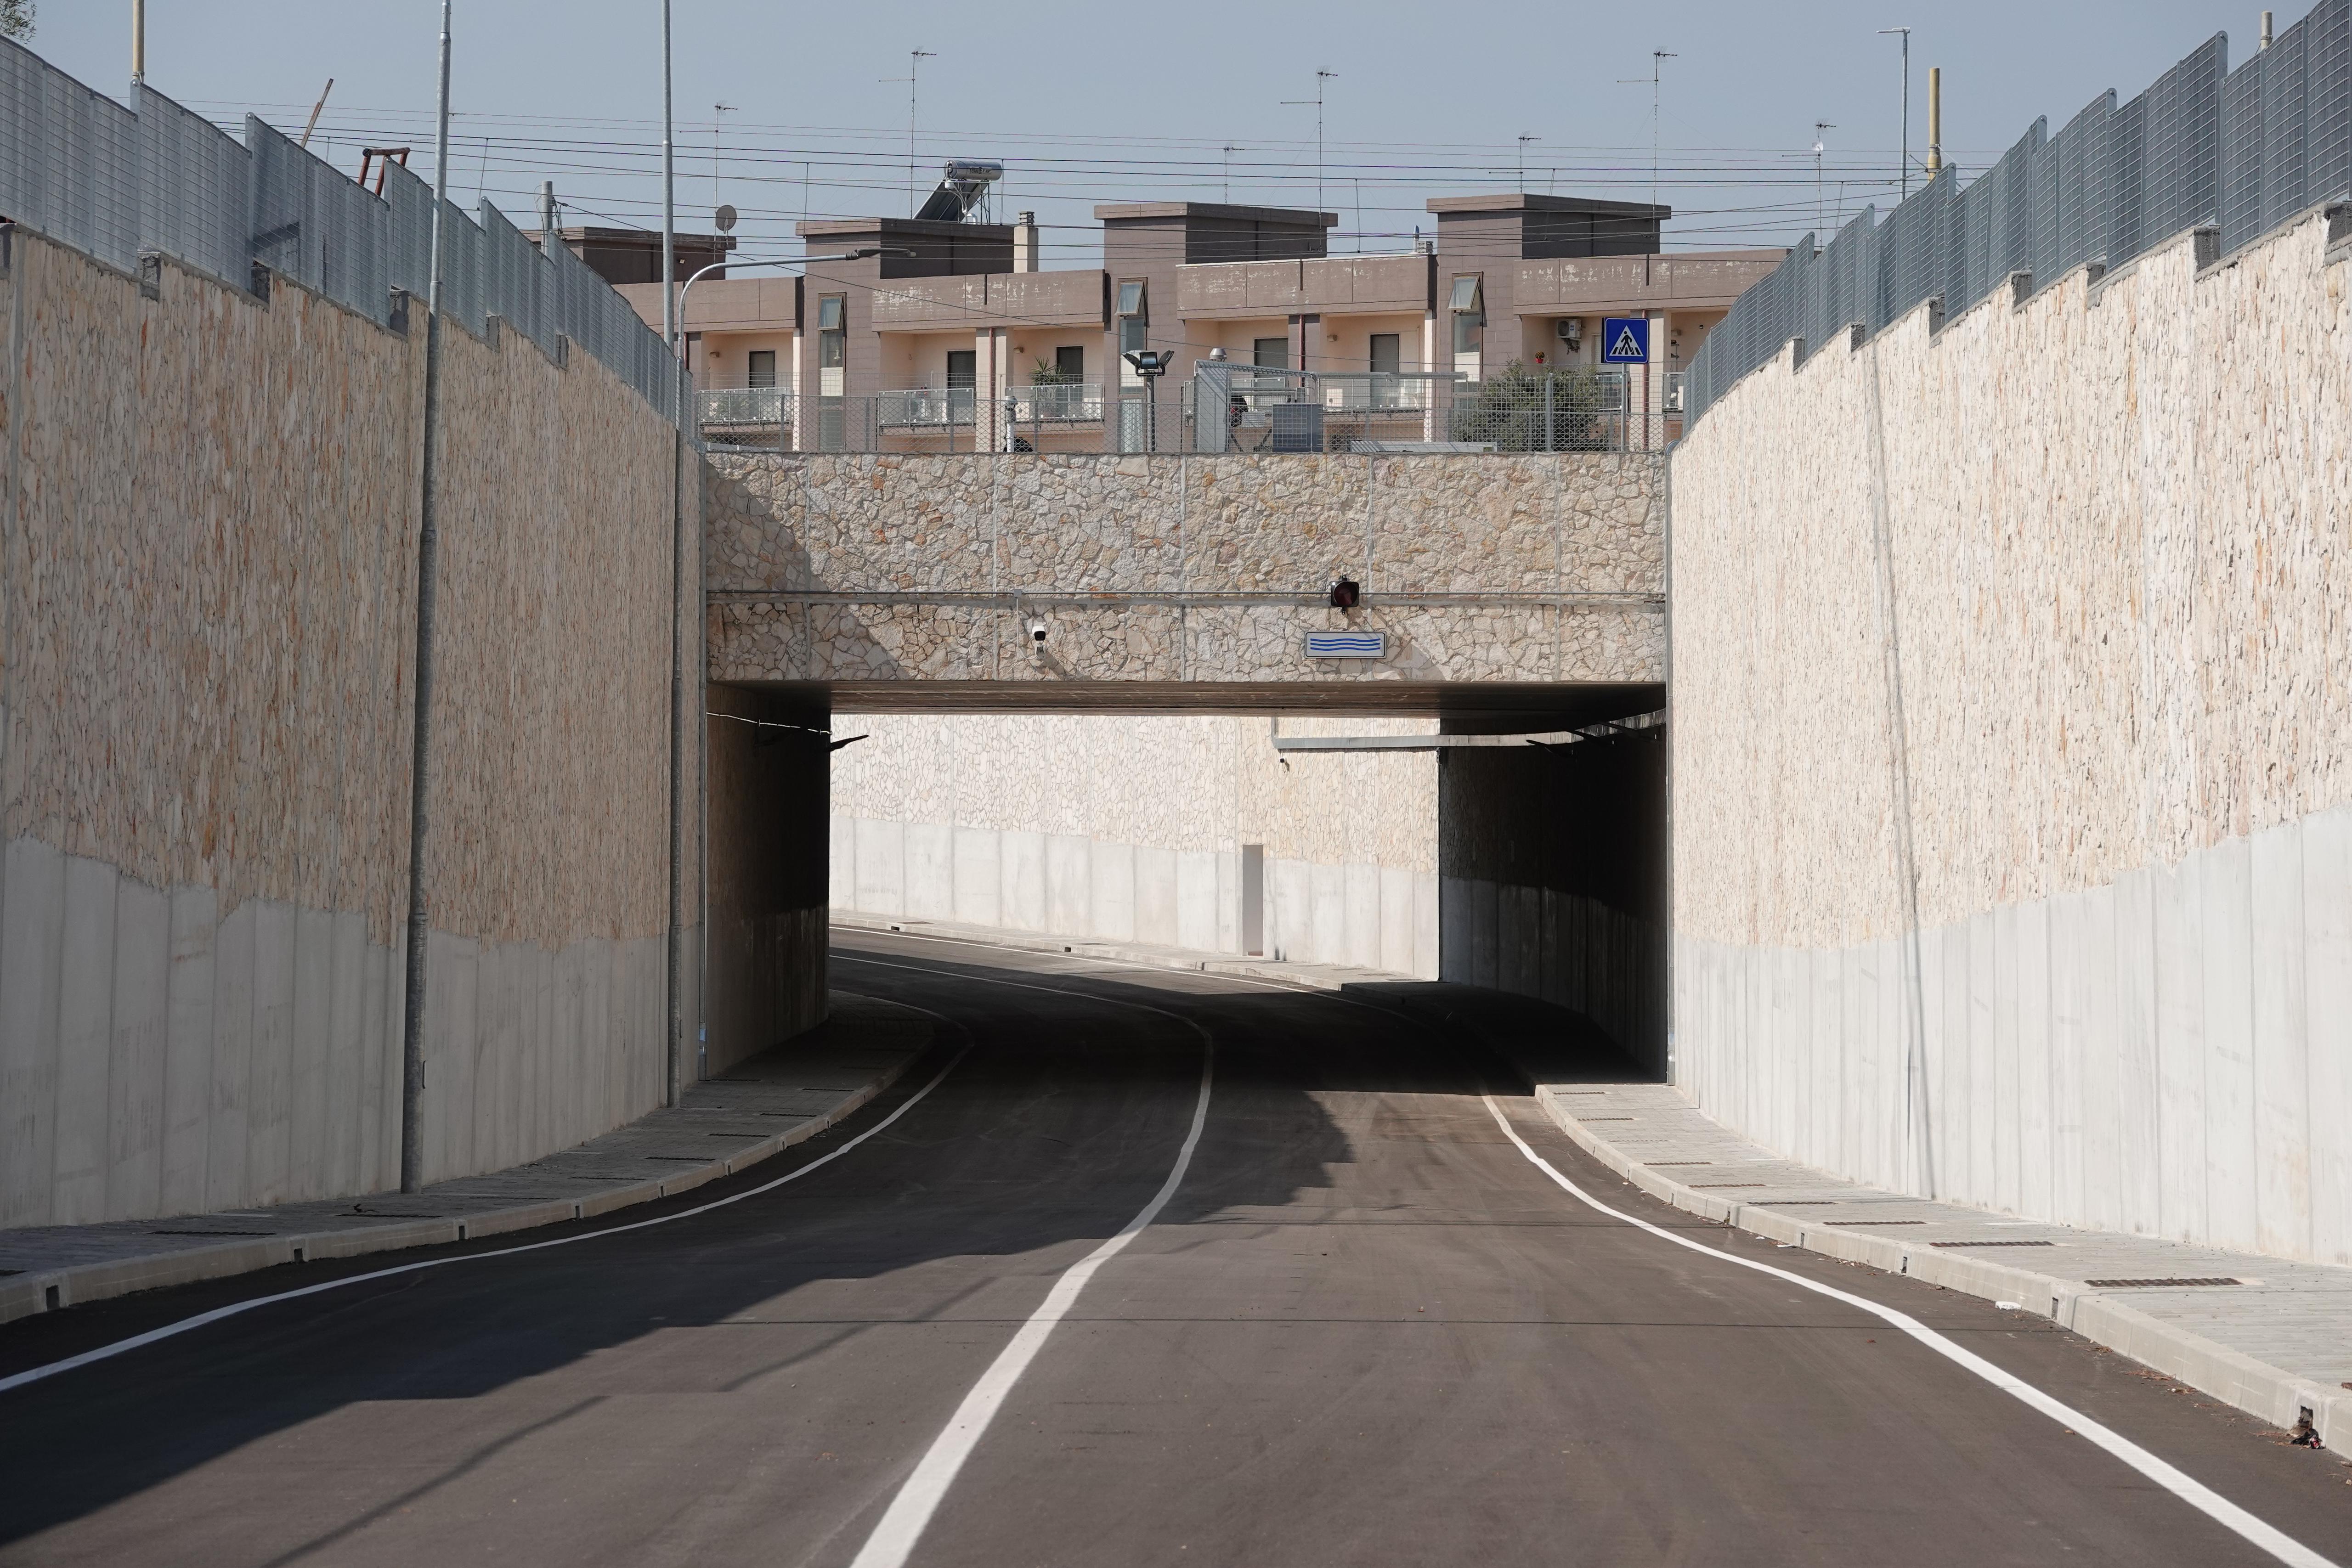 Galleria Trasporti, inaugurato il sottopasso di viale del Lilium di Terlizzi realizzato da Ferrotramviaria su finanziamento regionale - Diapositiva 5 di 13